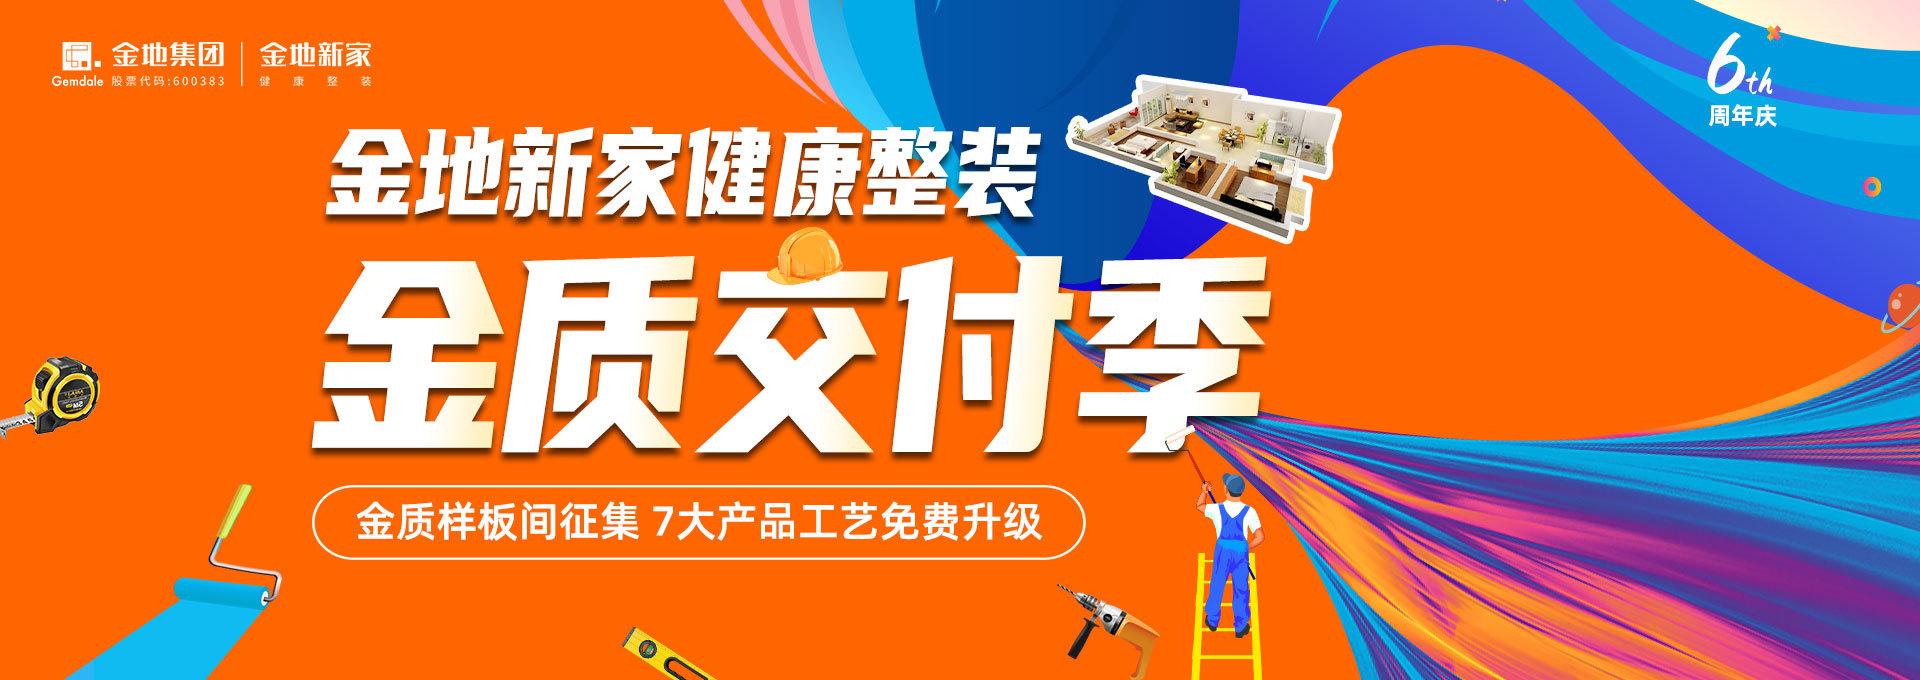 【西安】金质样板间征集  7大产品工艺免费升级